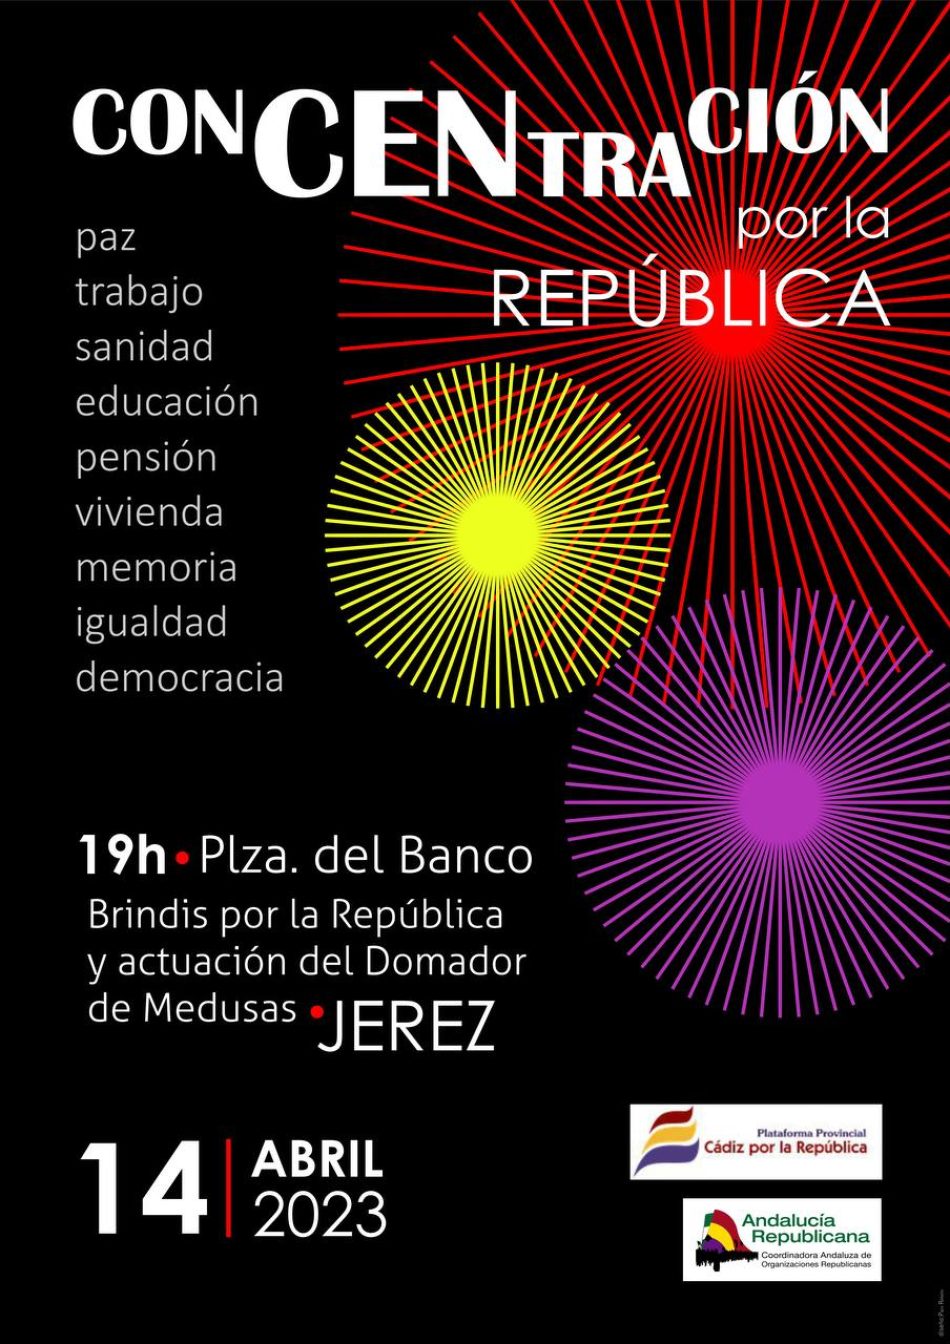 Andalucía Republicana convoca concentración el 14 de abril en la Plaza del Banco de Jerez